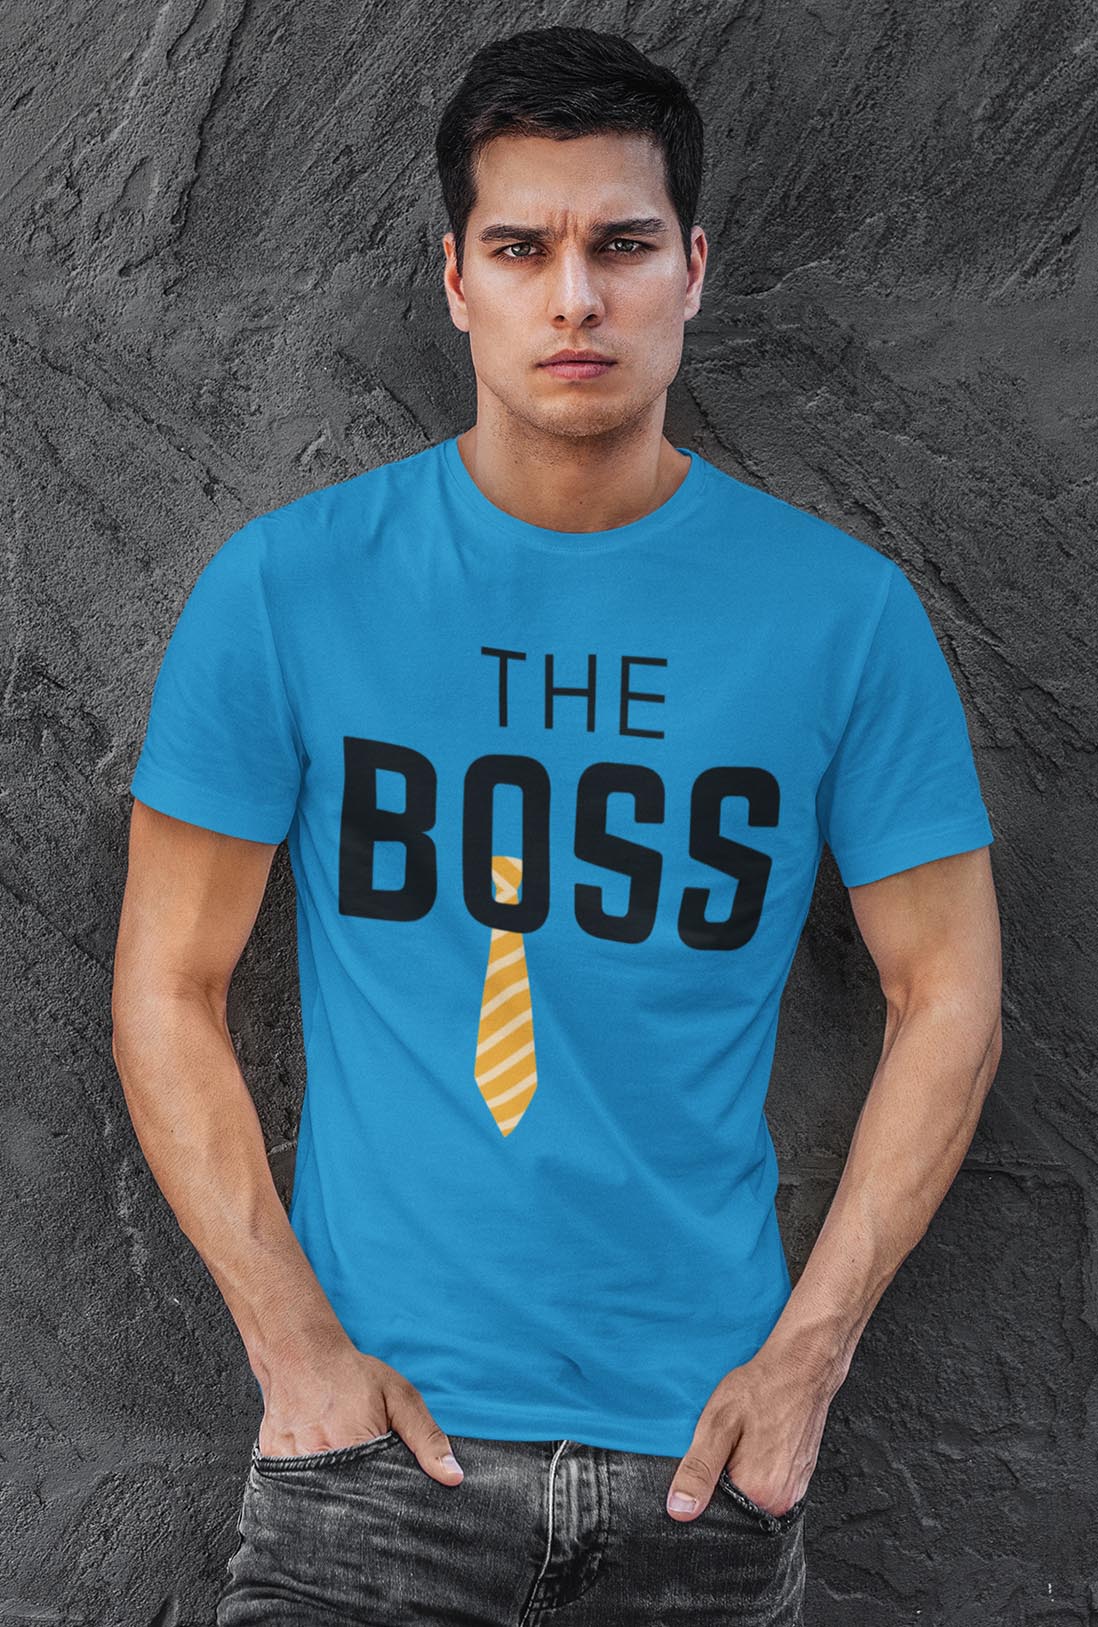 The Bose Men's Cotton T-Shirt